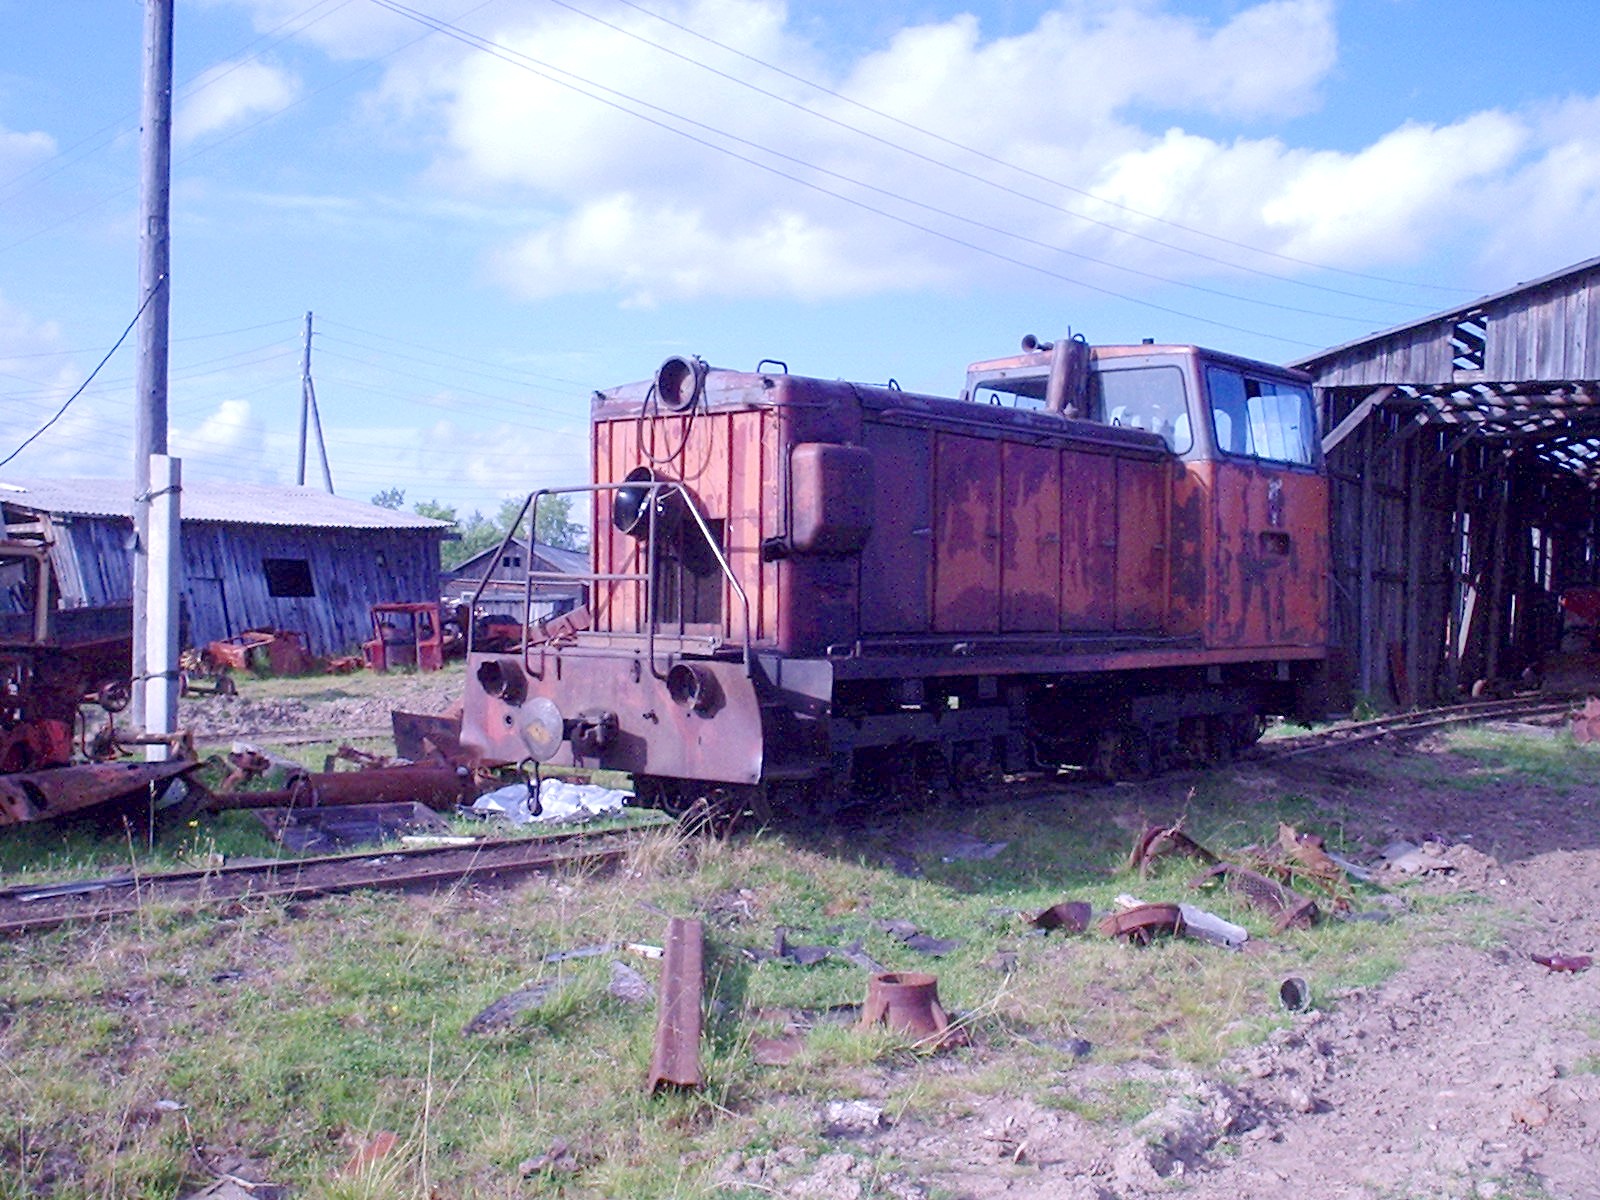 Пионерская узкоколейная железная дорога  —  фотографии, сделанные в 2005 году (часть 2)